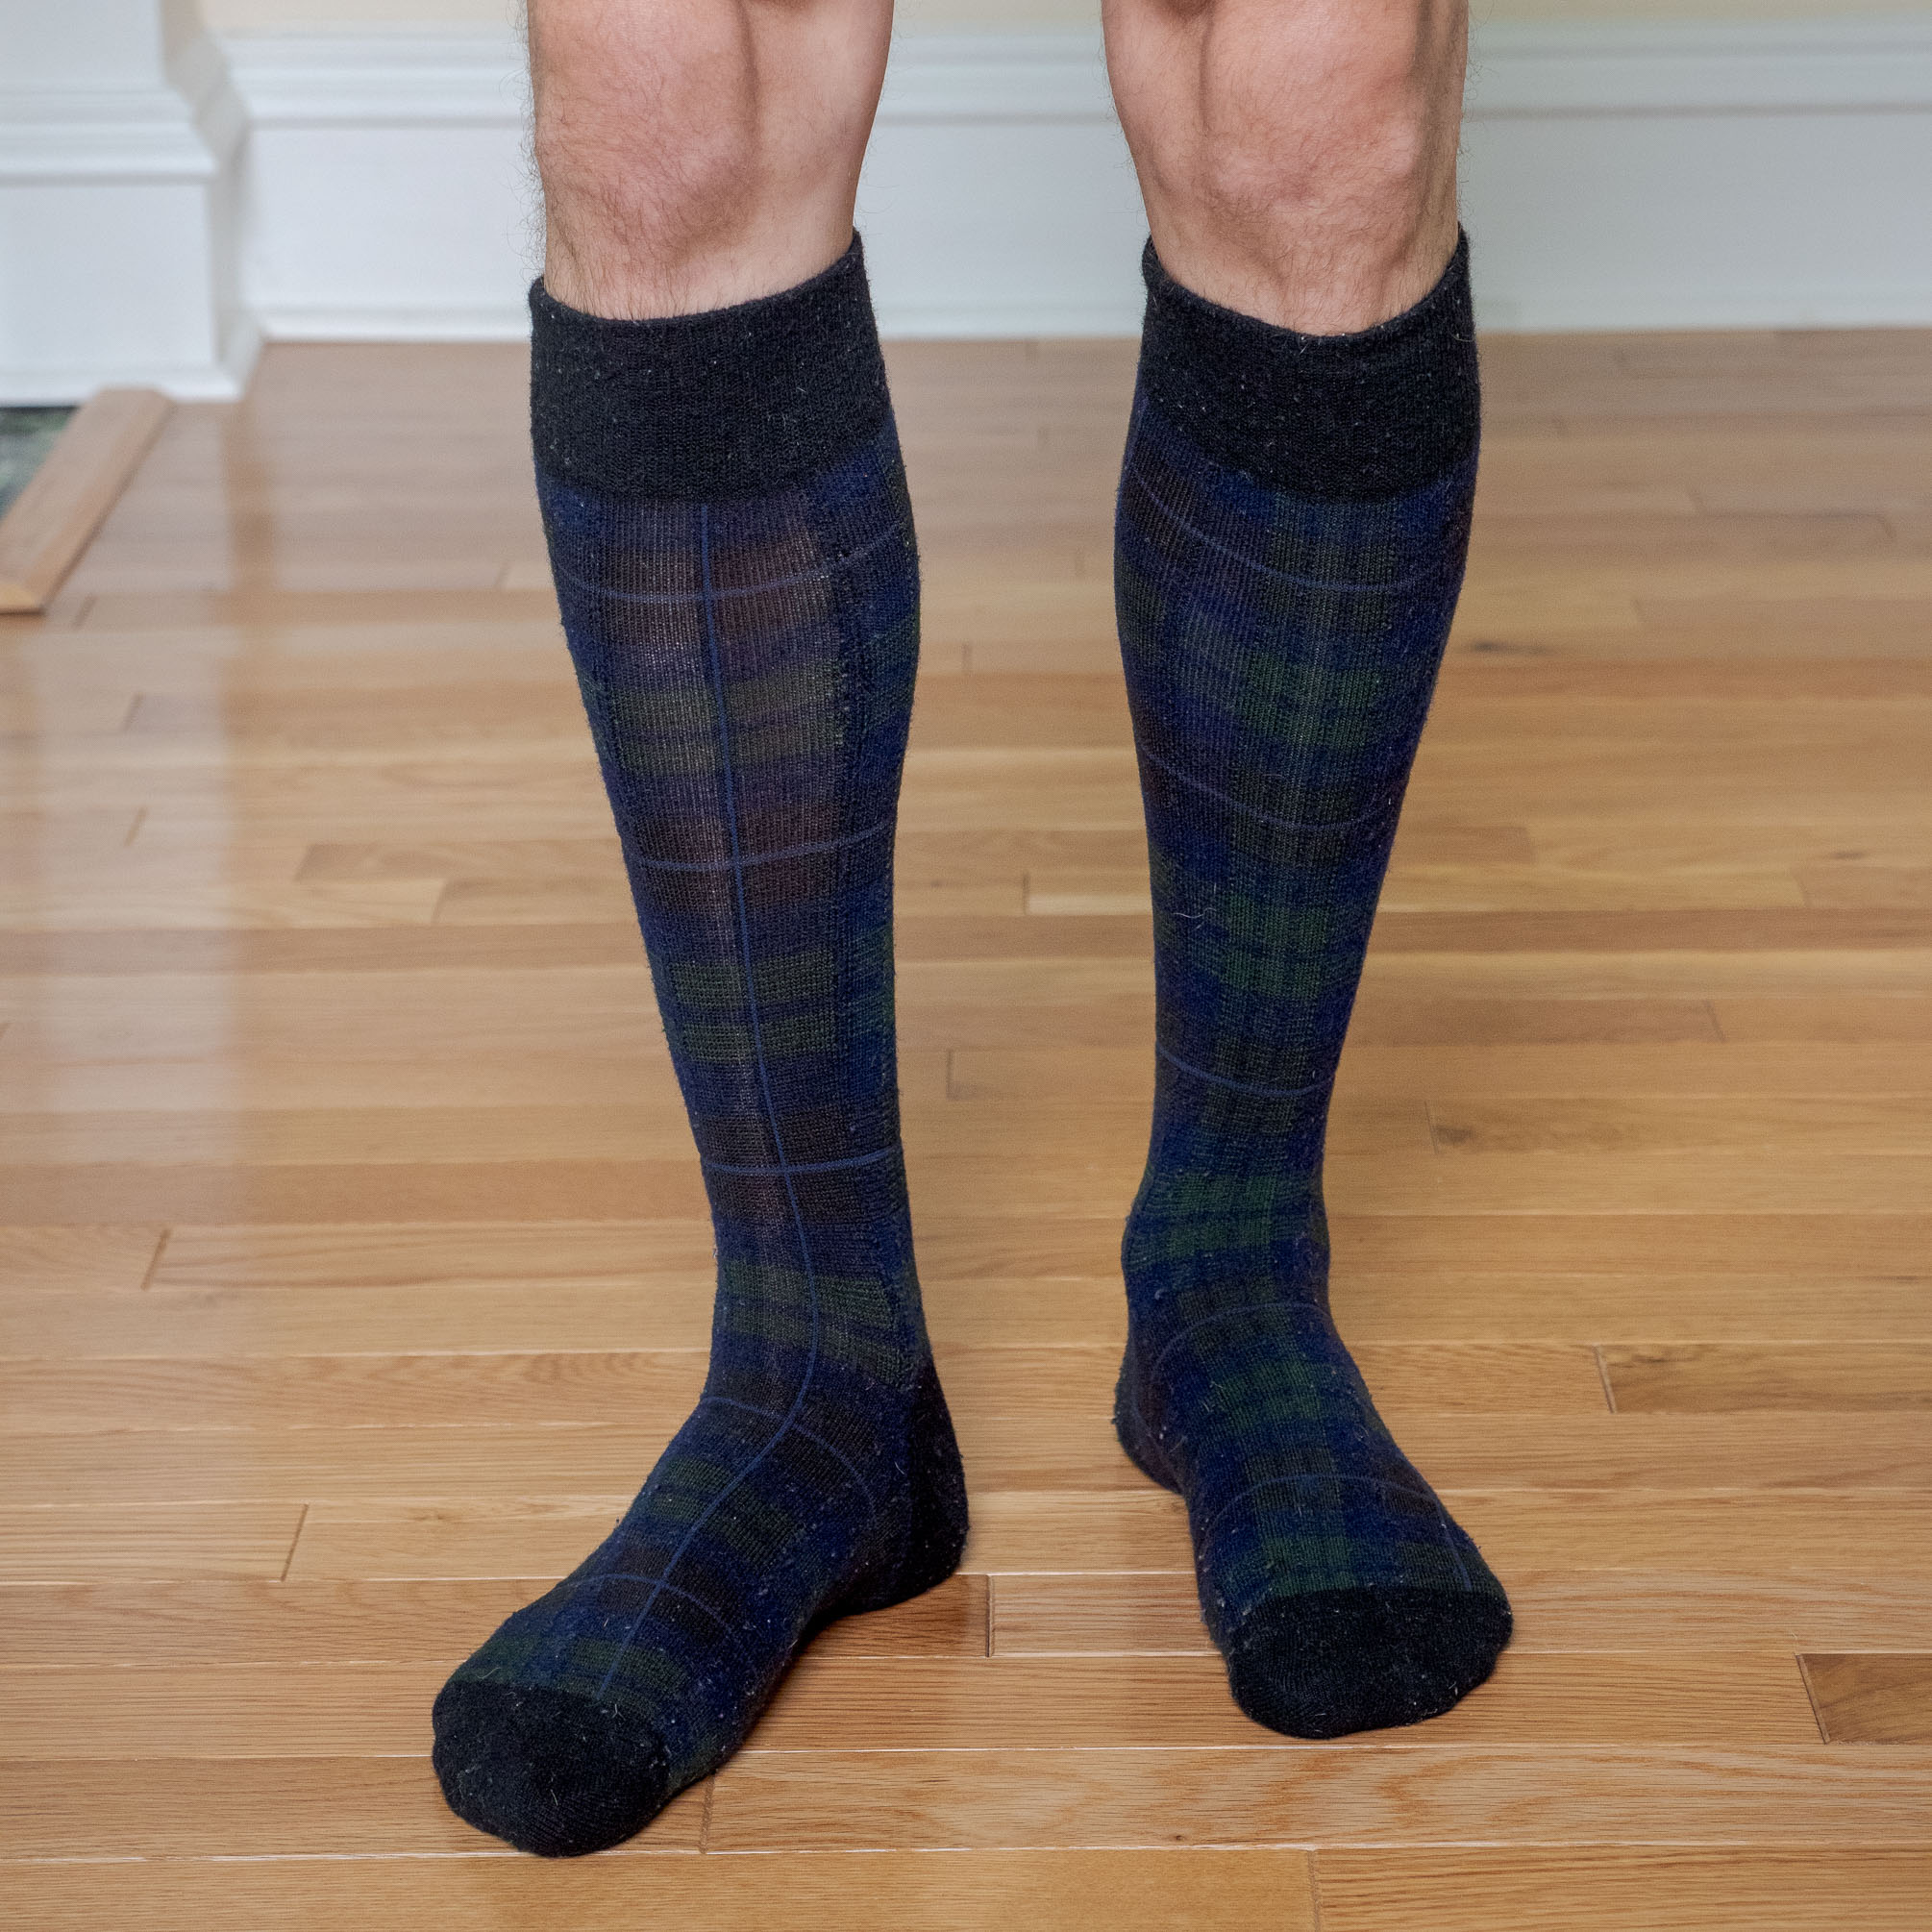 High Ankle Crew Socks Casual Mid Calf Dress Socks Long Tube Socks For Men Women